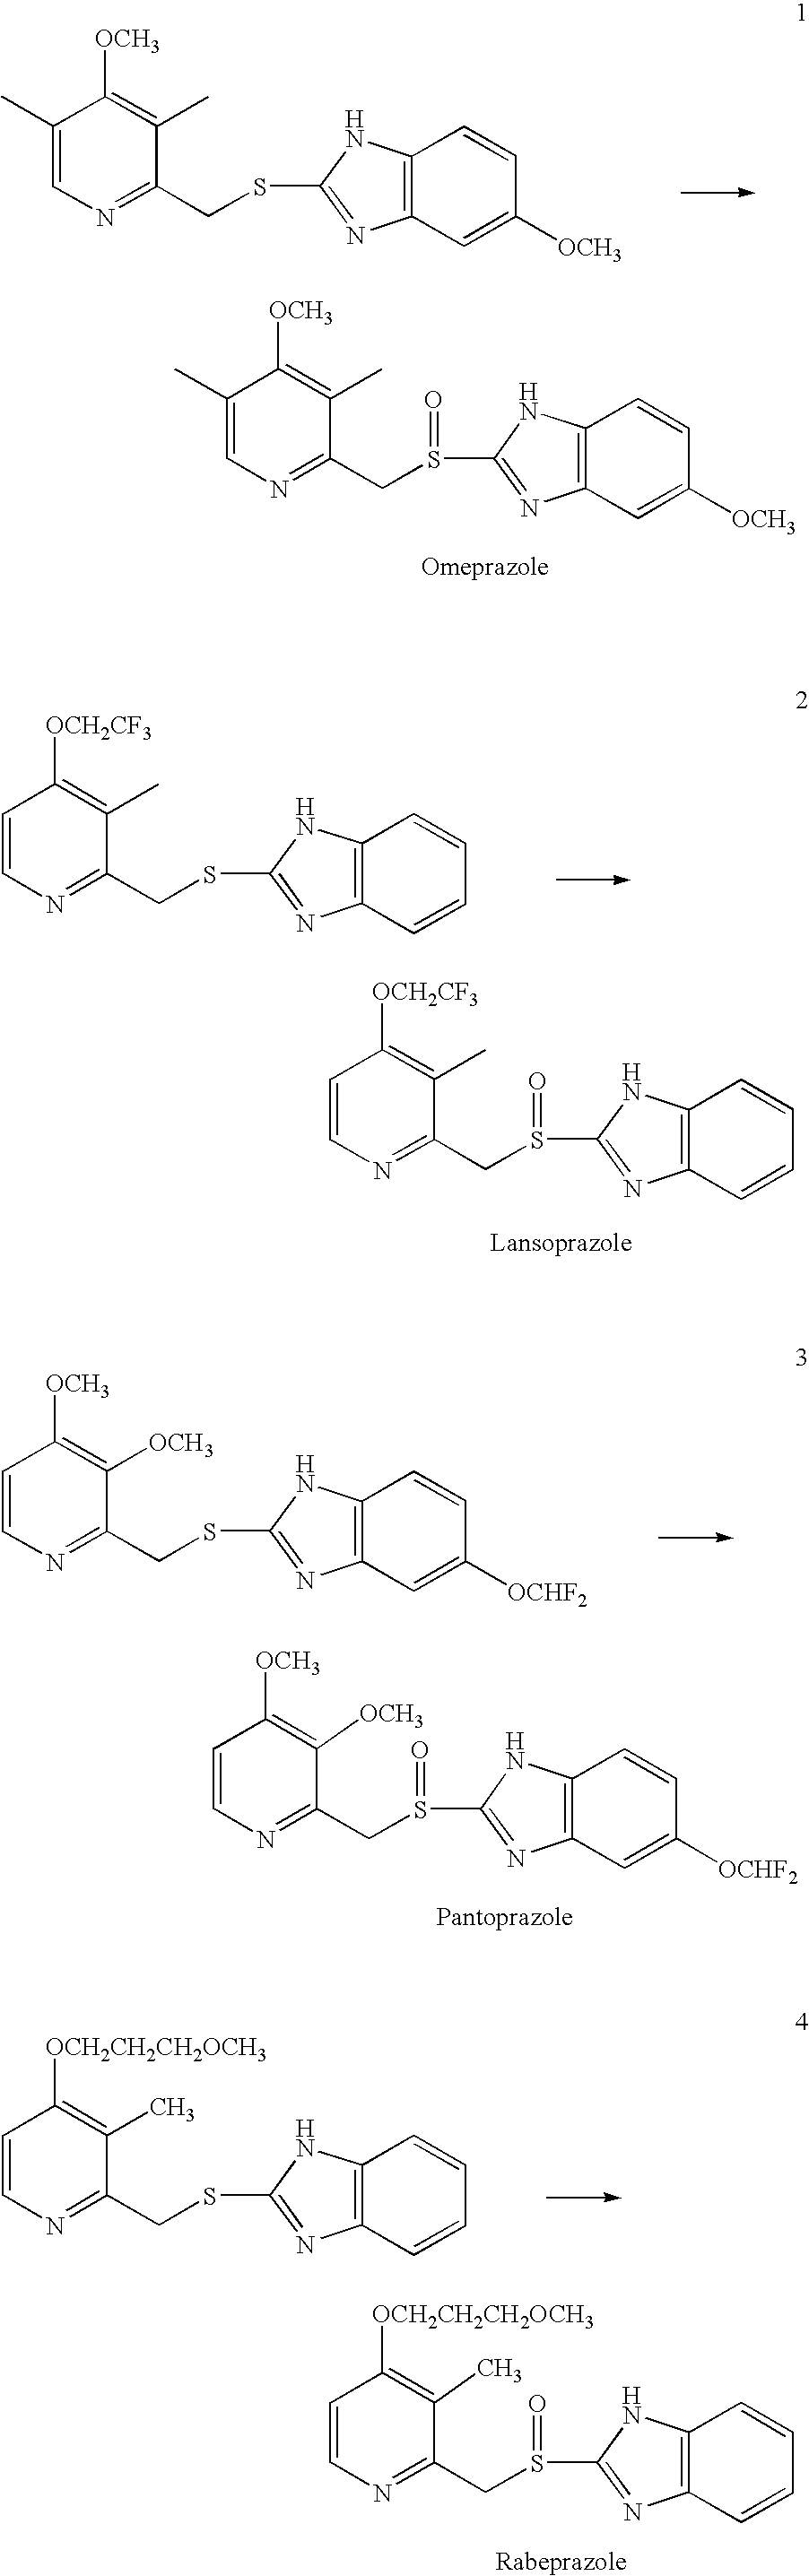 Method for preparing 2- (2-pyridinylmethylsulfinyl) benzimidazoles